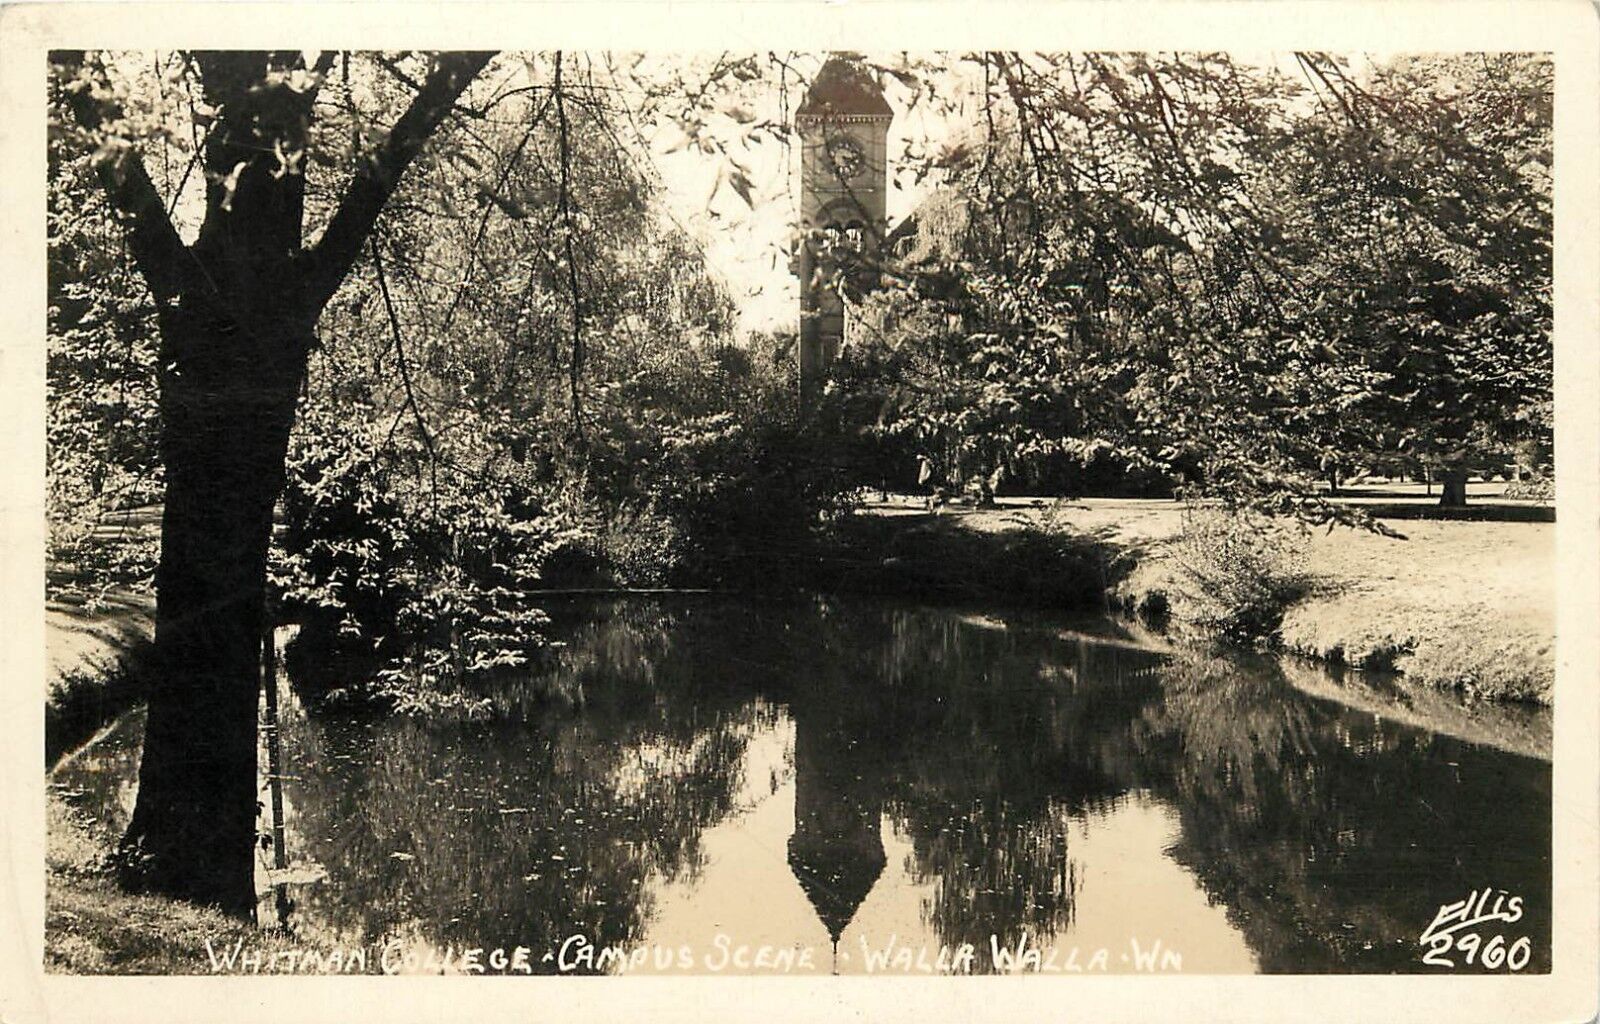 1940s RPPC Postcard Whitman College Campus Scene, Walla Walla WA Ellis 2960